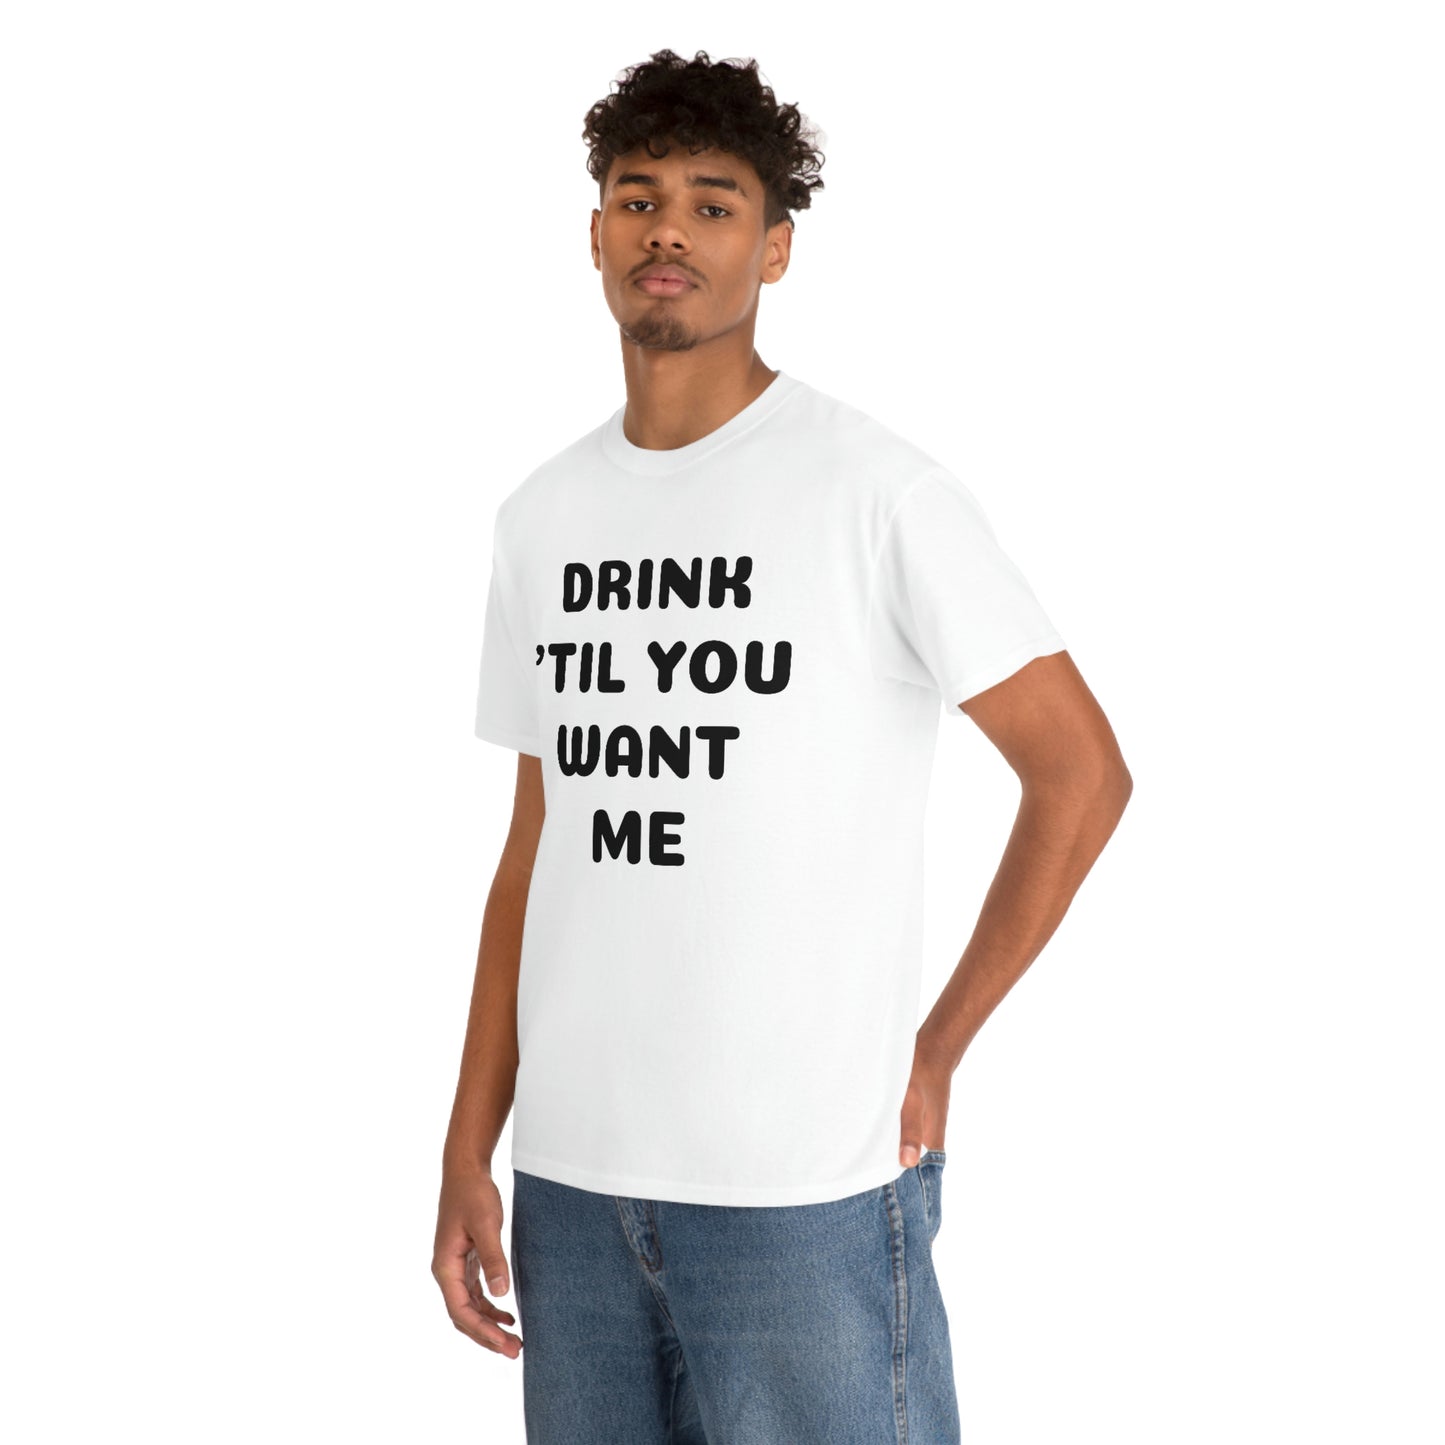 DRINK 'TIL YOU WANT ME T-SHIRT